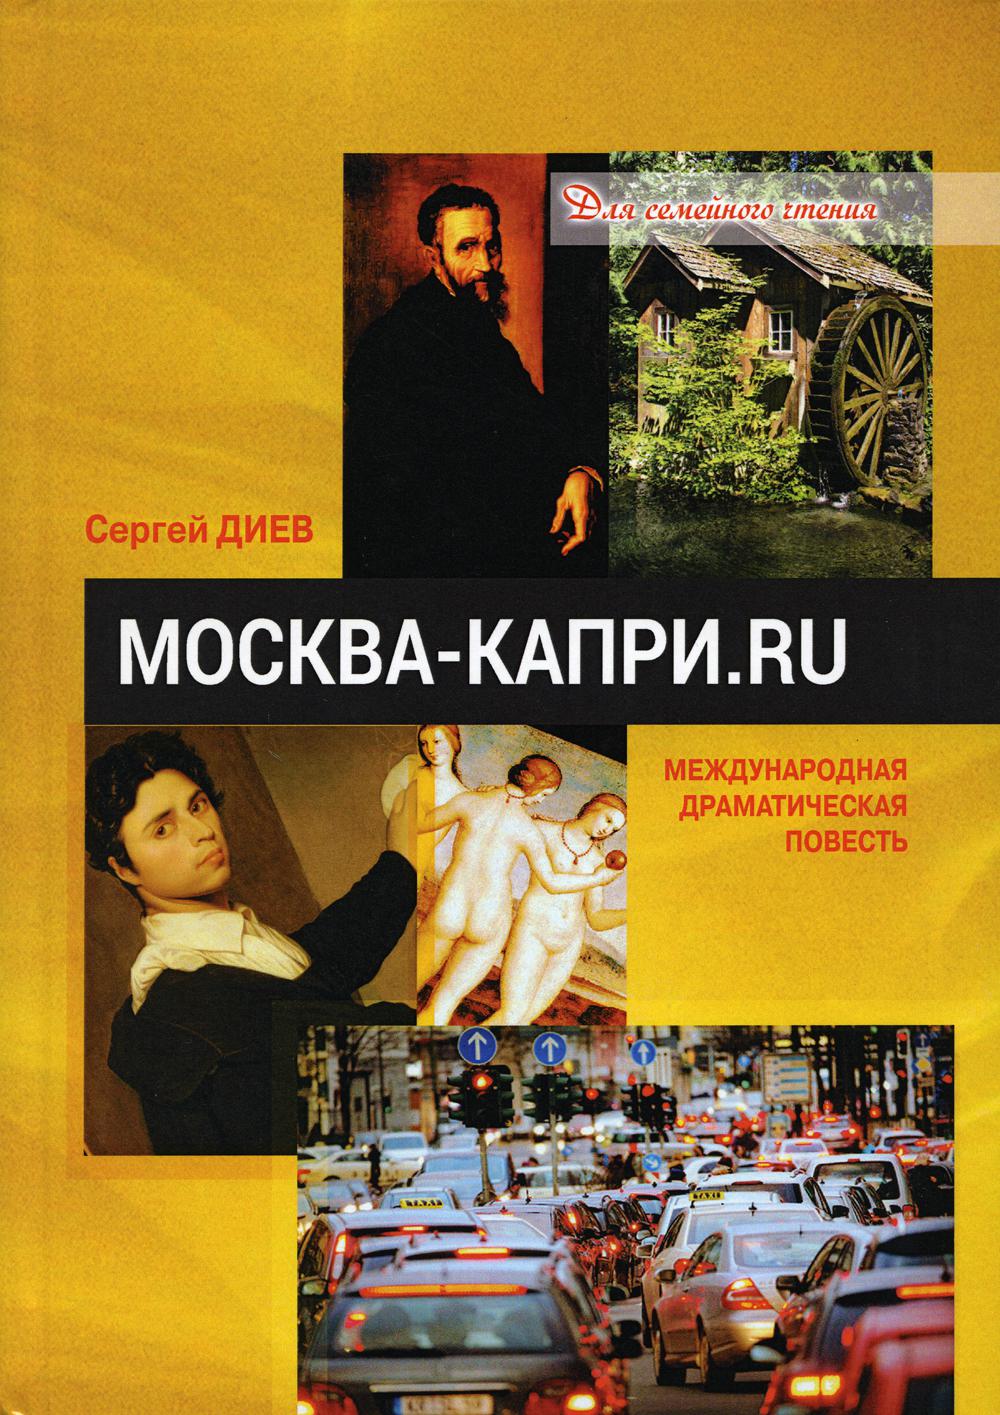 фото Книга москва - капри.ru юстицинформ